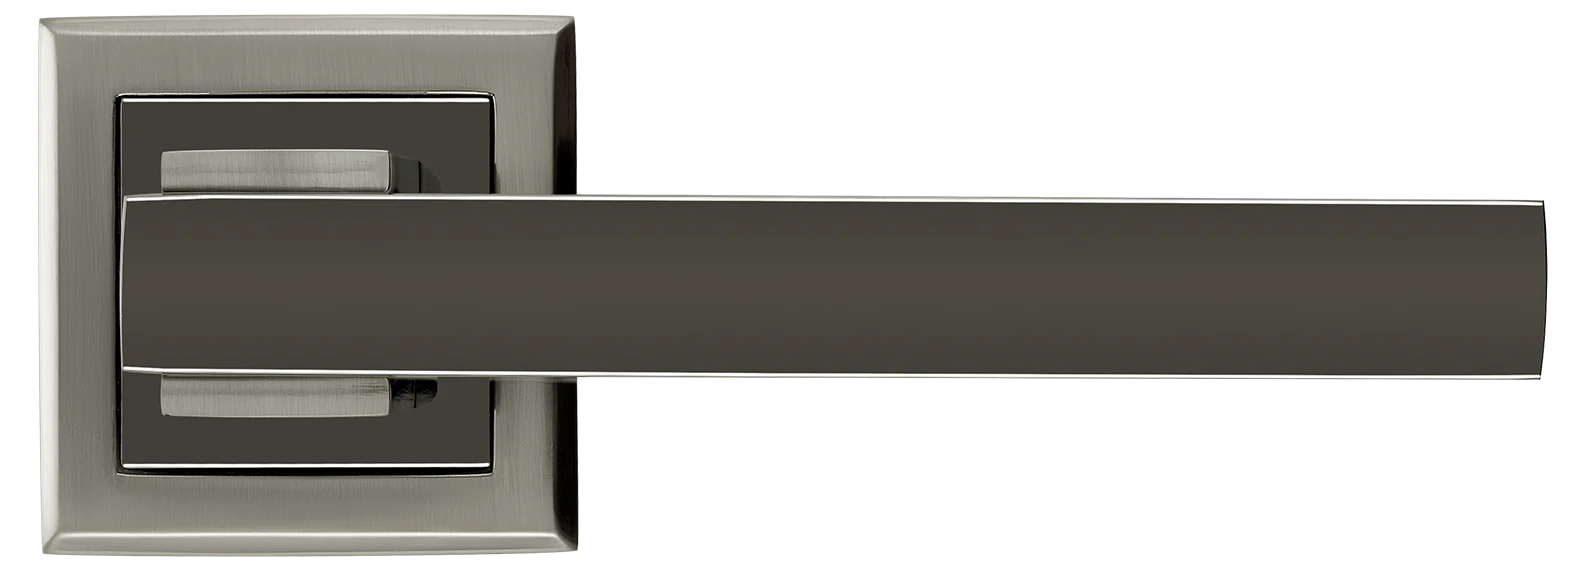 PIQUADRO, ручка дверная MH-37 SN/BN-S, на квадратной накладке, цвет - бел. никель/черн. никель фото купить в Омске